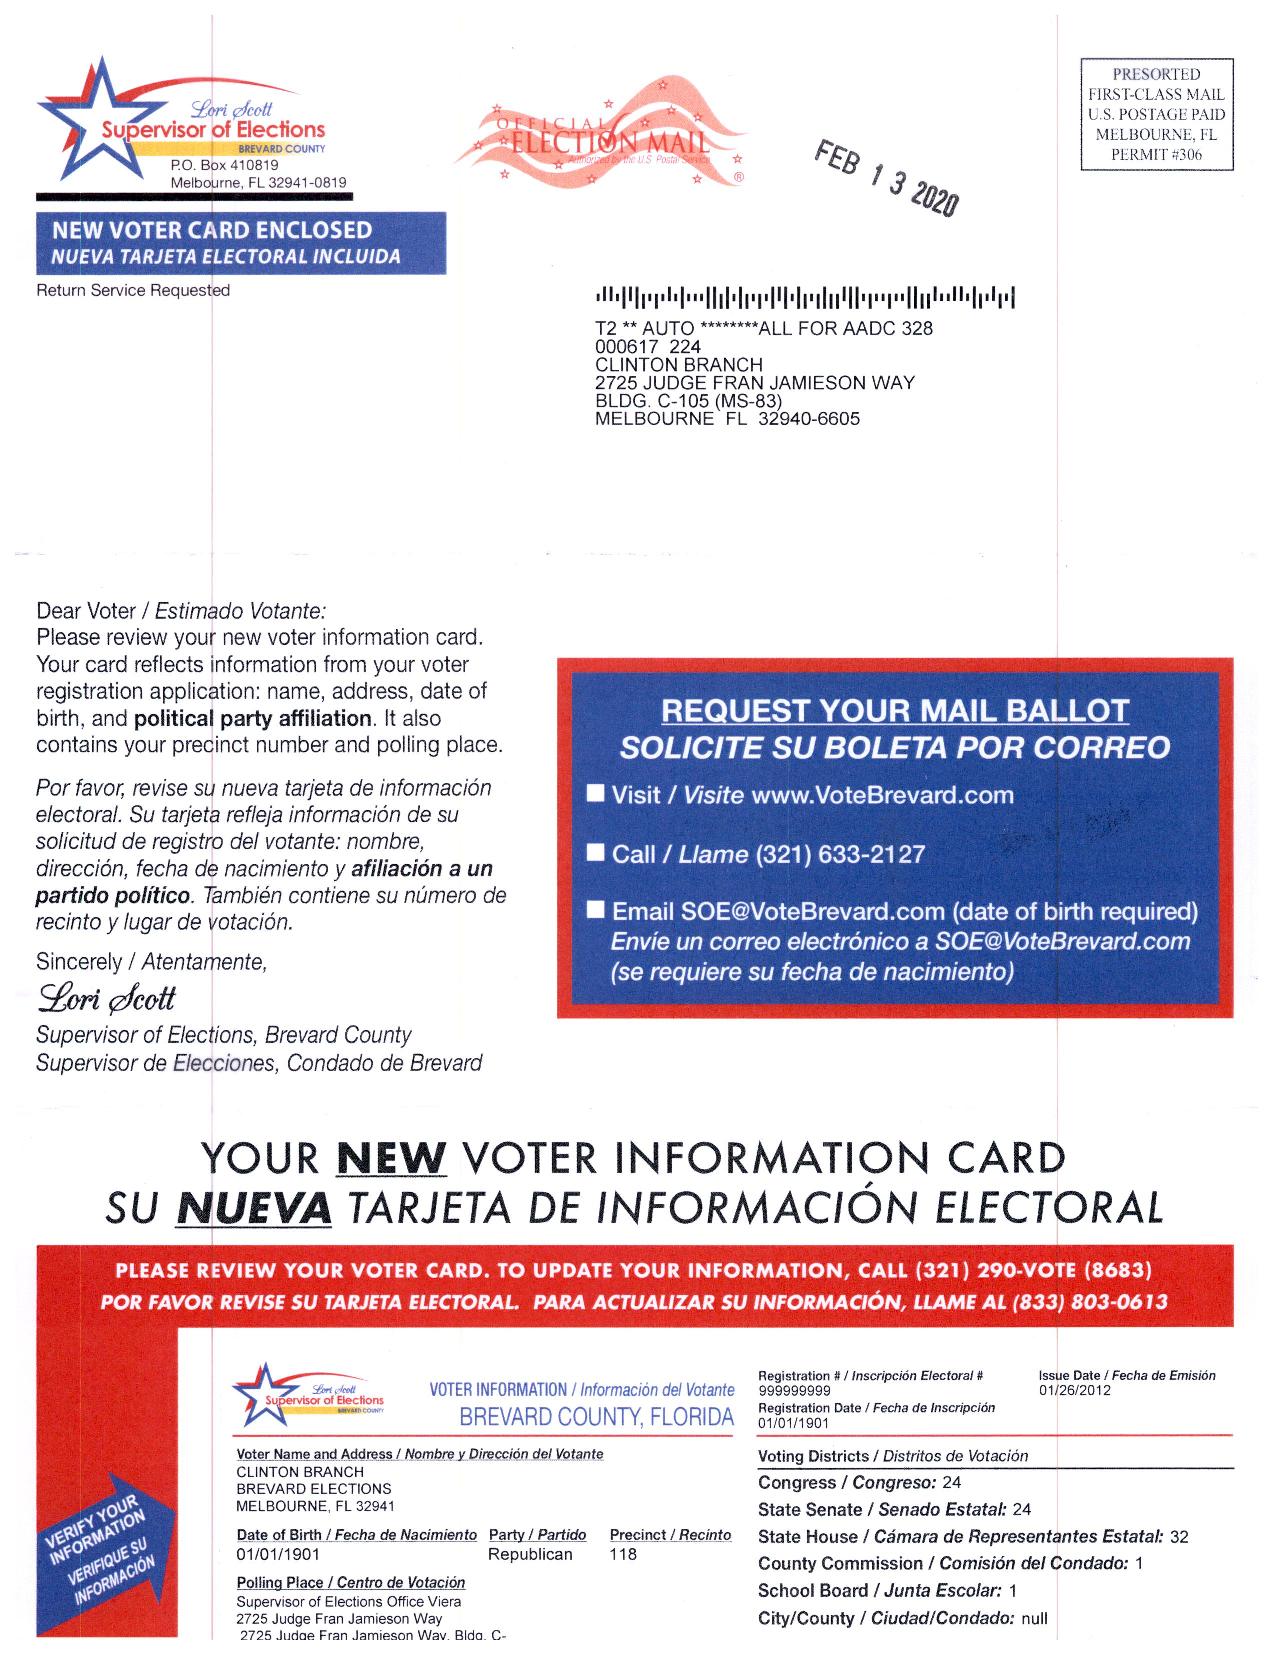 Sample Voter Information Card front side